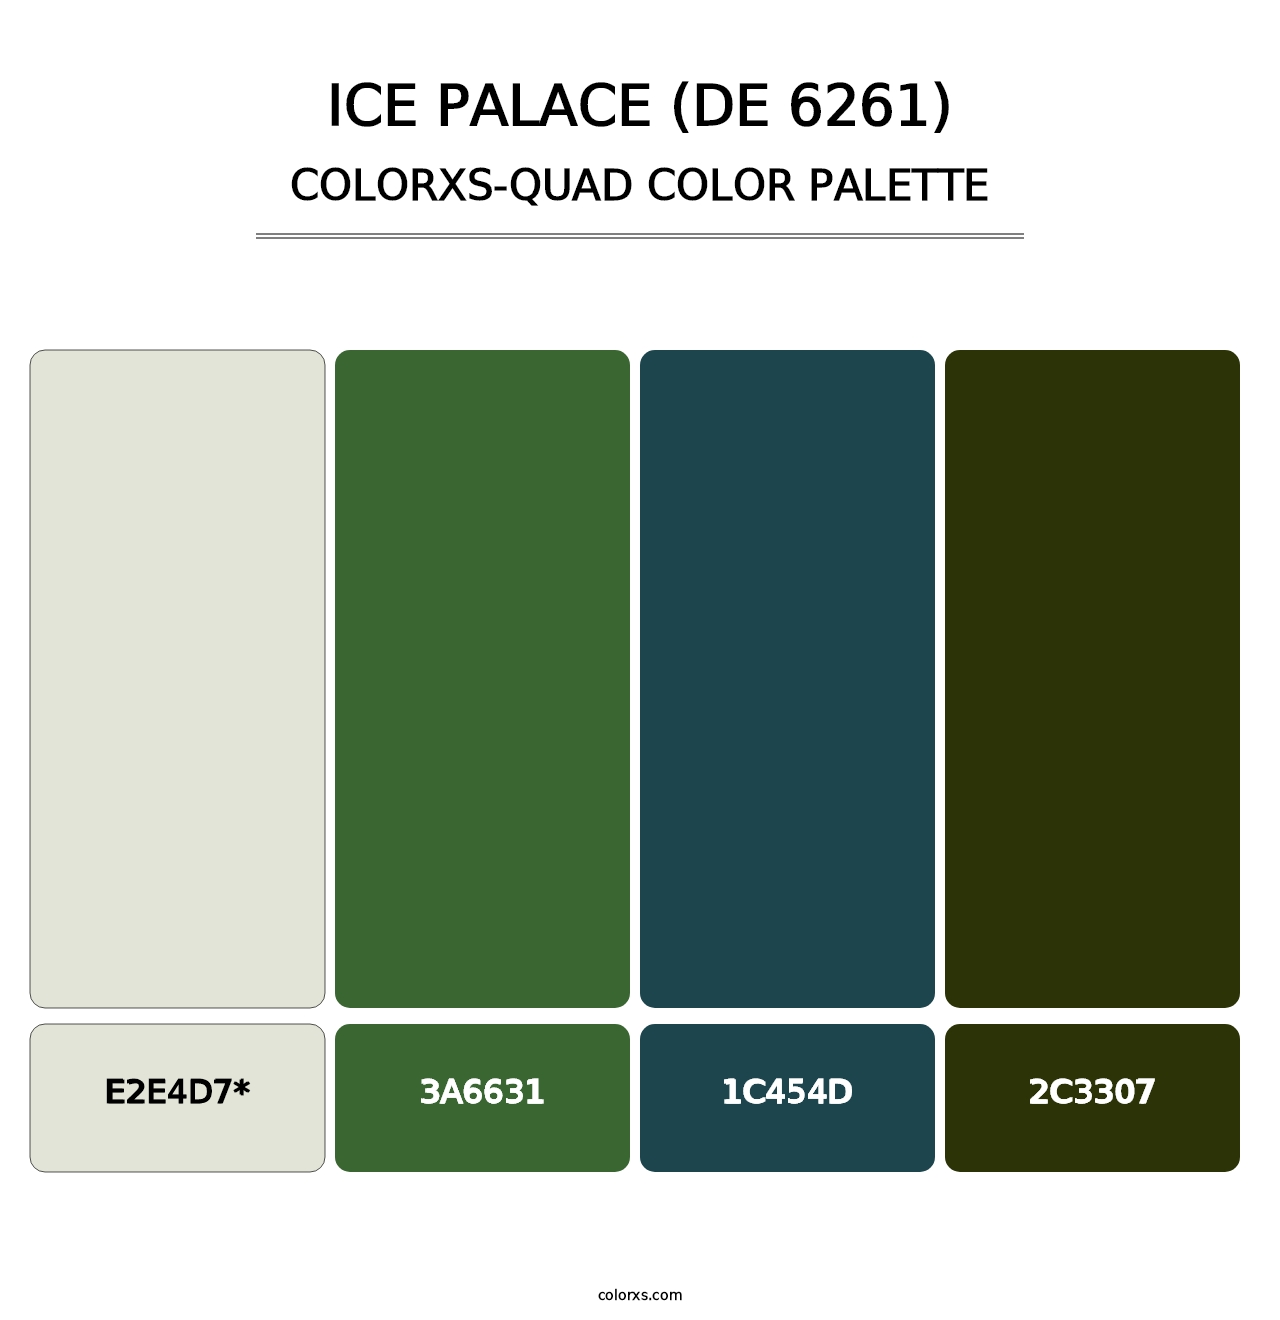 Ice Palace (DE 6261) - Colorxs Quad Palette